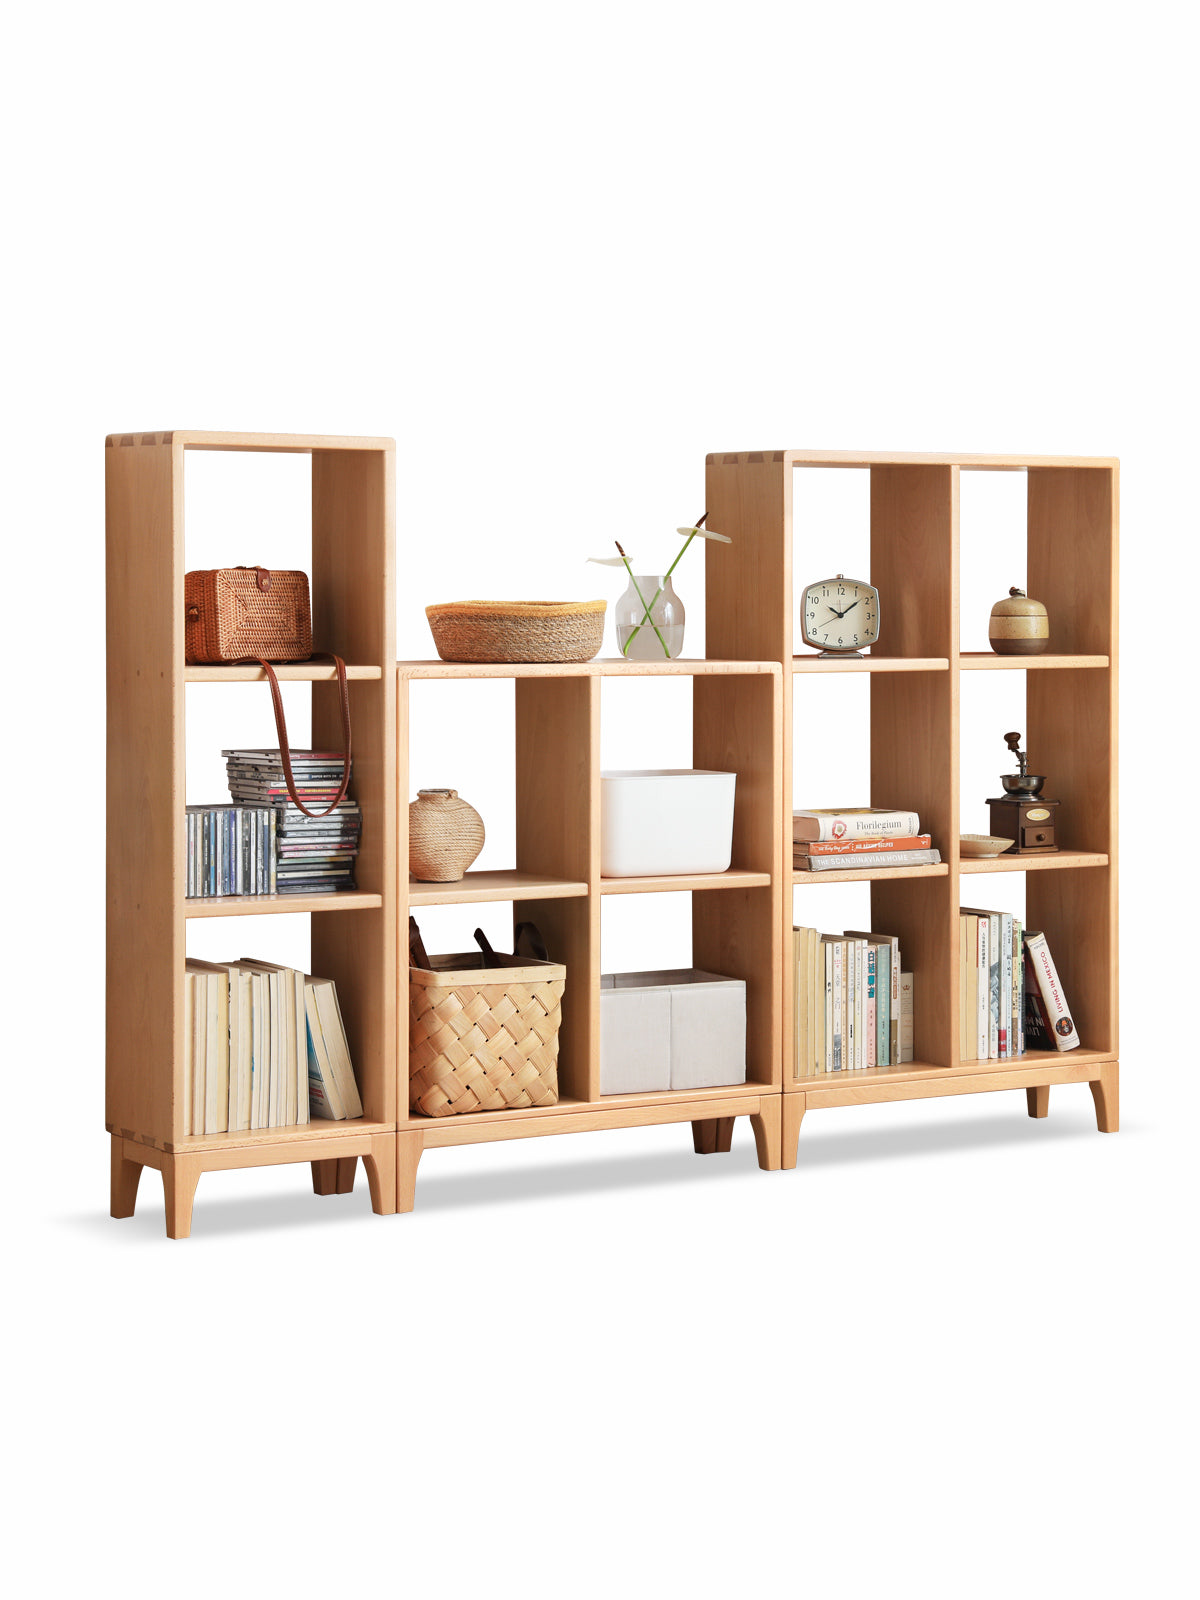 Beech solid wood bookshelf, Nordic display rack"-